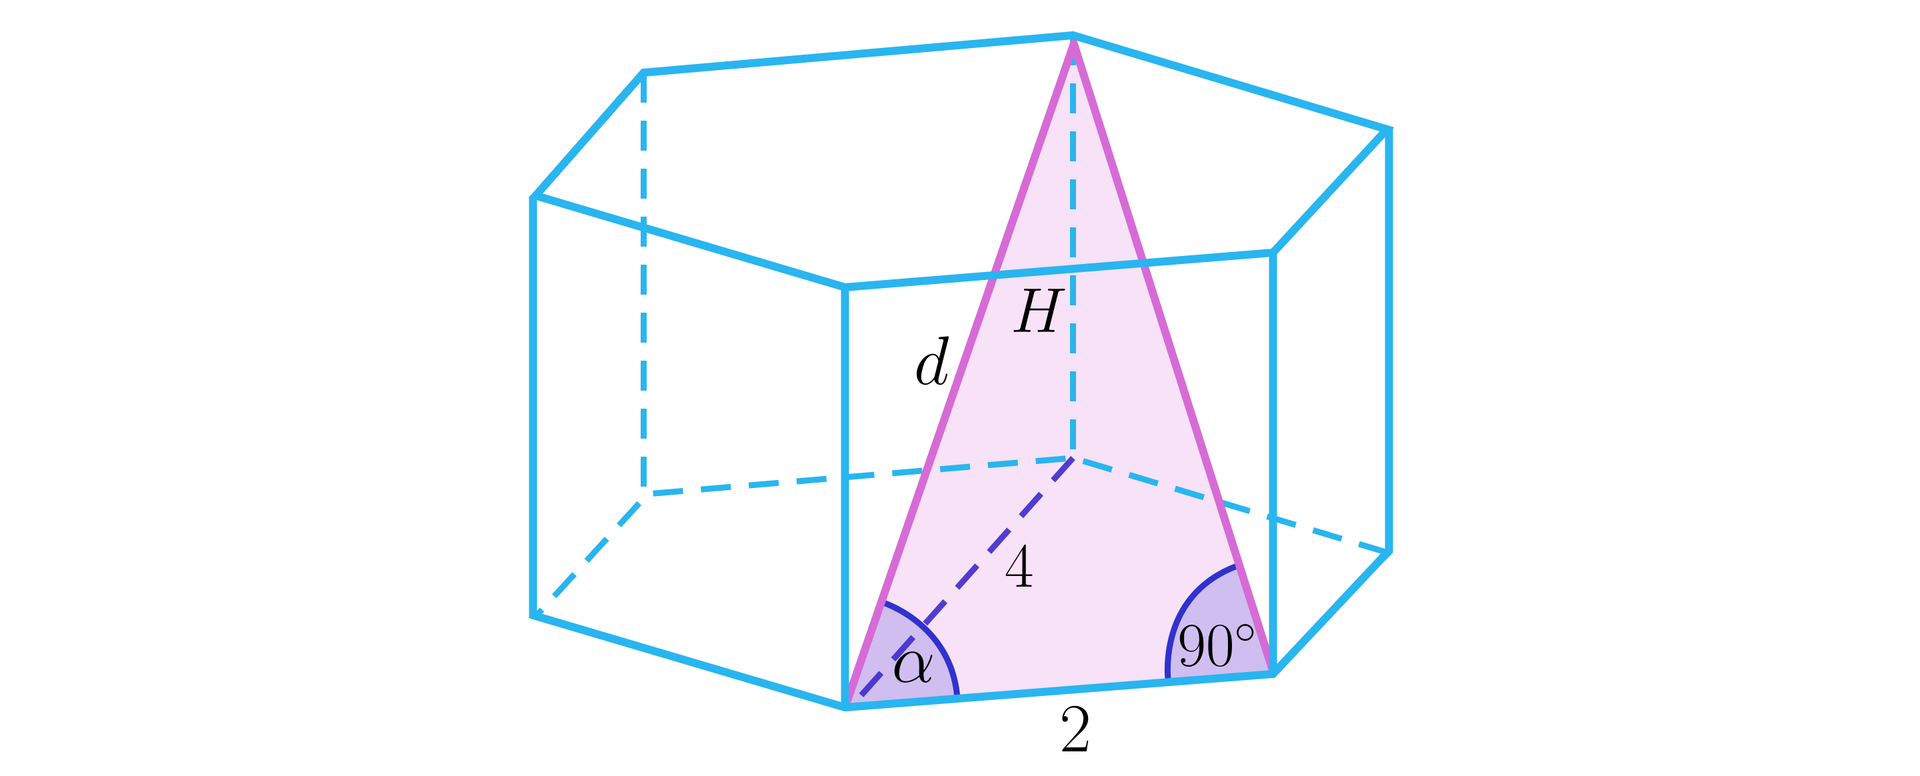 Grafika przedstawia graniastosłup prawidłowy sześciokątny, w którym zaznaczono dłuższą oraz krótszą  przekątną graniastosłupa, przekątne te łączą się w jednym wierzchołku i wraz z krawędzią podstawy znajdującą się pomiędzy nimi tworzą trójkąt. Dłuższa przekątna graniastosłupa została podpisana literą d. Kąt między krótszą przekątną graniastosłupa a krawędzią podstawy podpisano literą alfa. Kąt pomiędzy krótszą przekątną graniastosłupa a krawędzią podstawy ma 90 stopni. Krawędź podstawy ma długość dwa. Dłuższa przekątna podstawy ma długość cztery. Krawędź ściany bocznej podpisano literą H. 